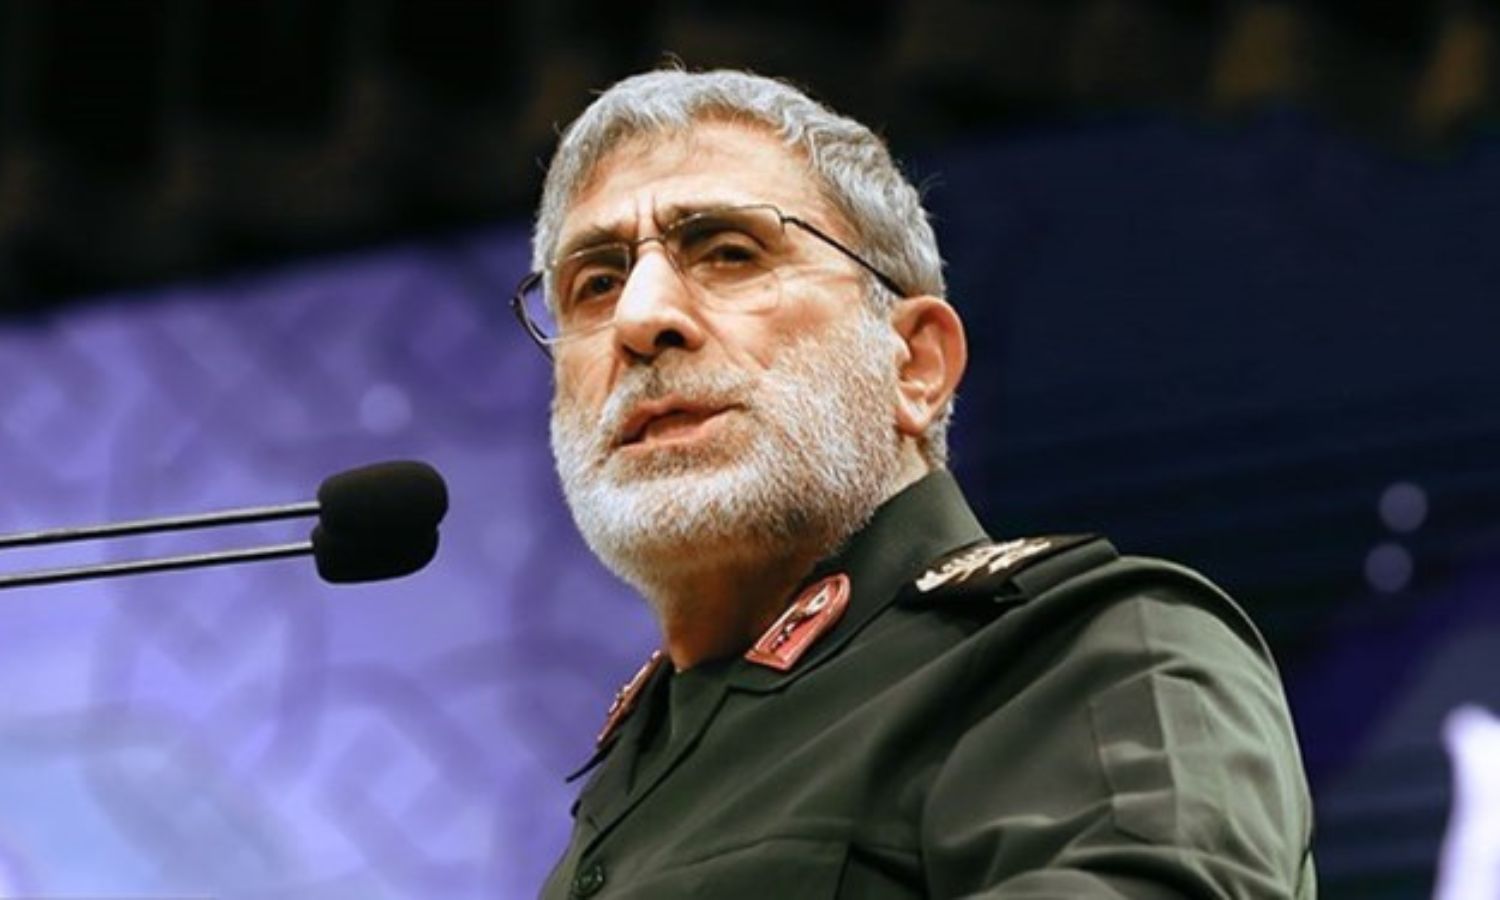 العميد إسماعيل قاآني، نائب قائد "فيلق القدس" التابع لـ "الحرس الثوري" الإيراني (وكالة الأنباء فارس)